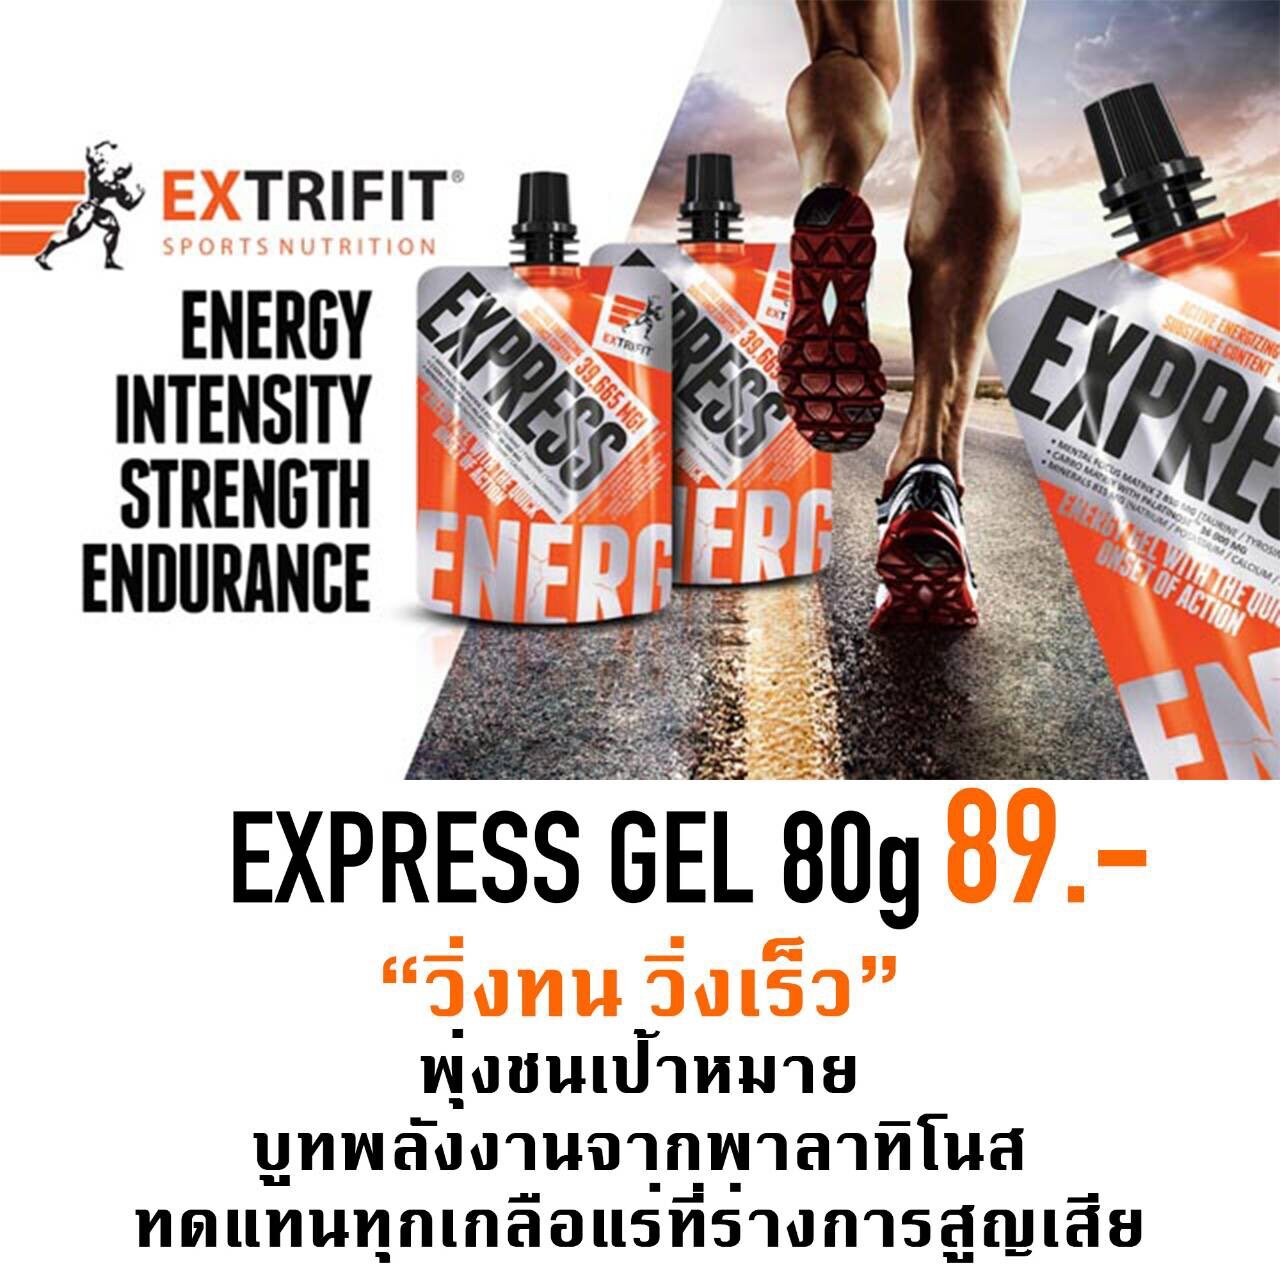 Express gel เจลให้พลังงานและสารอาหารสำหรับนักกีฬา โดยเฉพาะนักวิ่ง นักปั่นจักรยาน และนักกีฬาทุกประเภท นำเข้าจากยุโรป ให้พลังงาน 148 กิโลแคลอรี่ ราคาซองละ 89 บาท